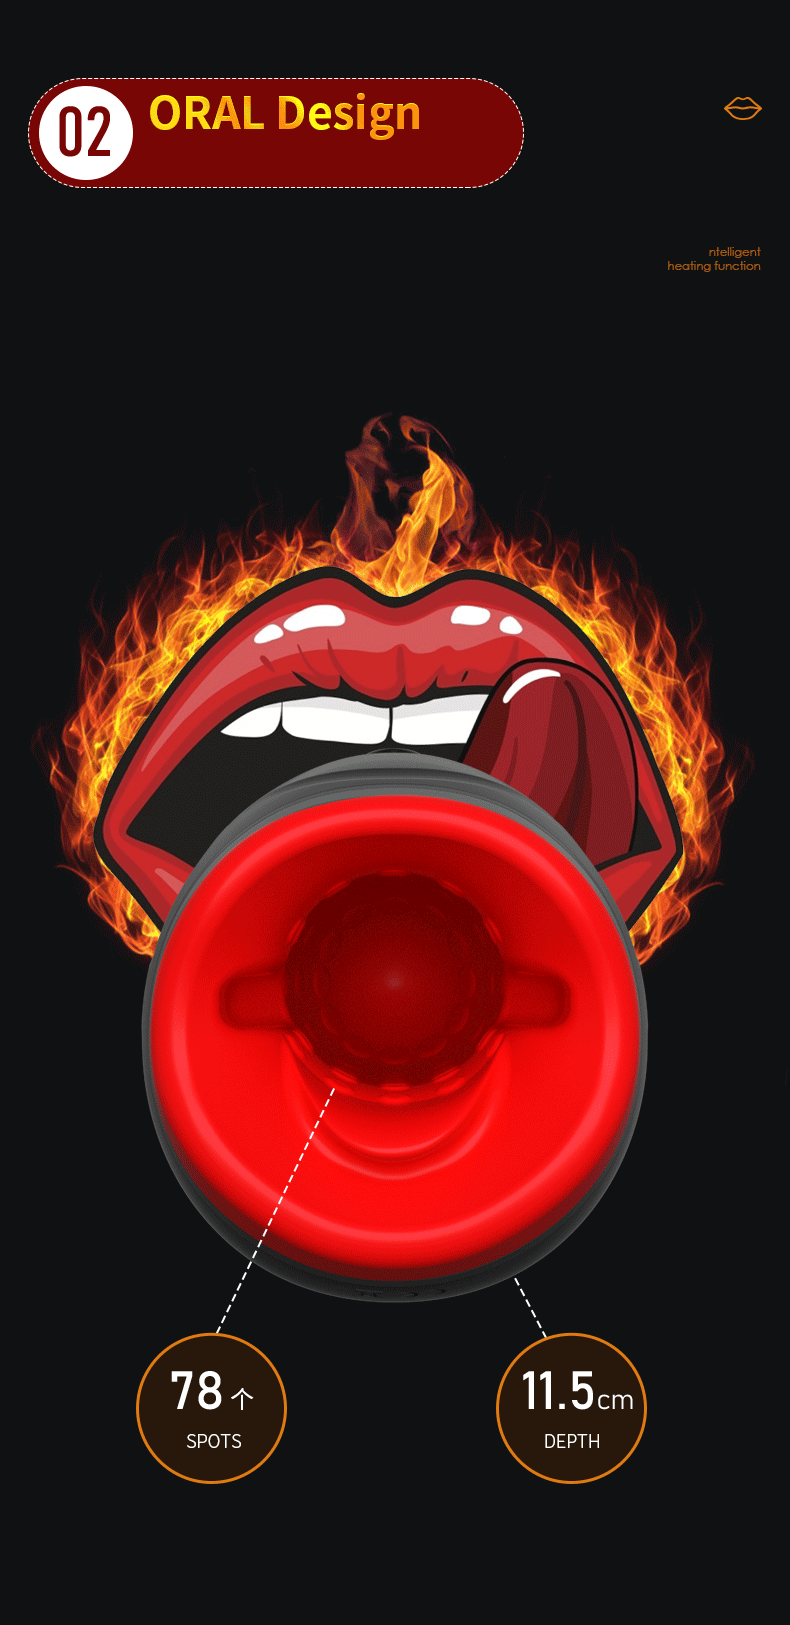 may bu mut Lua cuong no Hotboy 4 - Cốc miệng bú mút cao cấp Hotboy furious fire Rung xoay và phát nhiệt!!